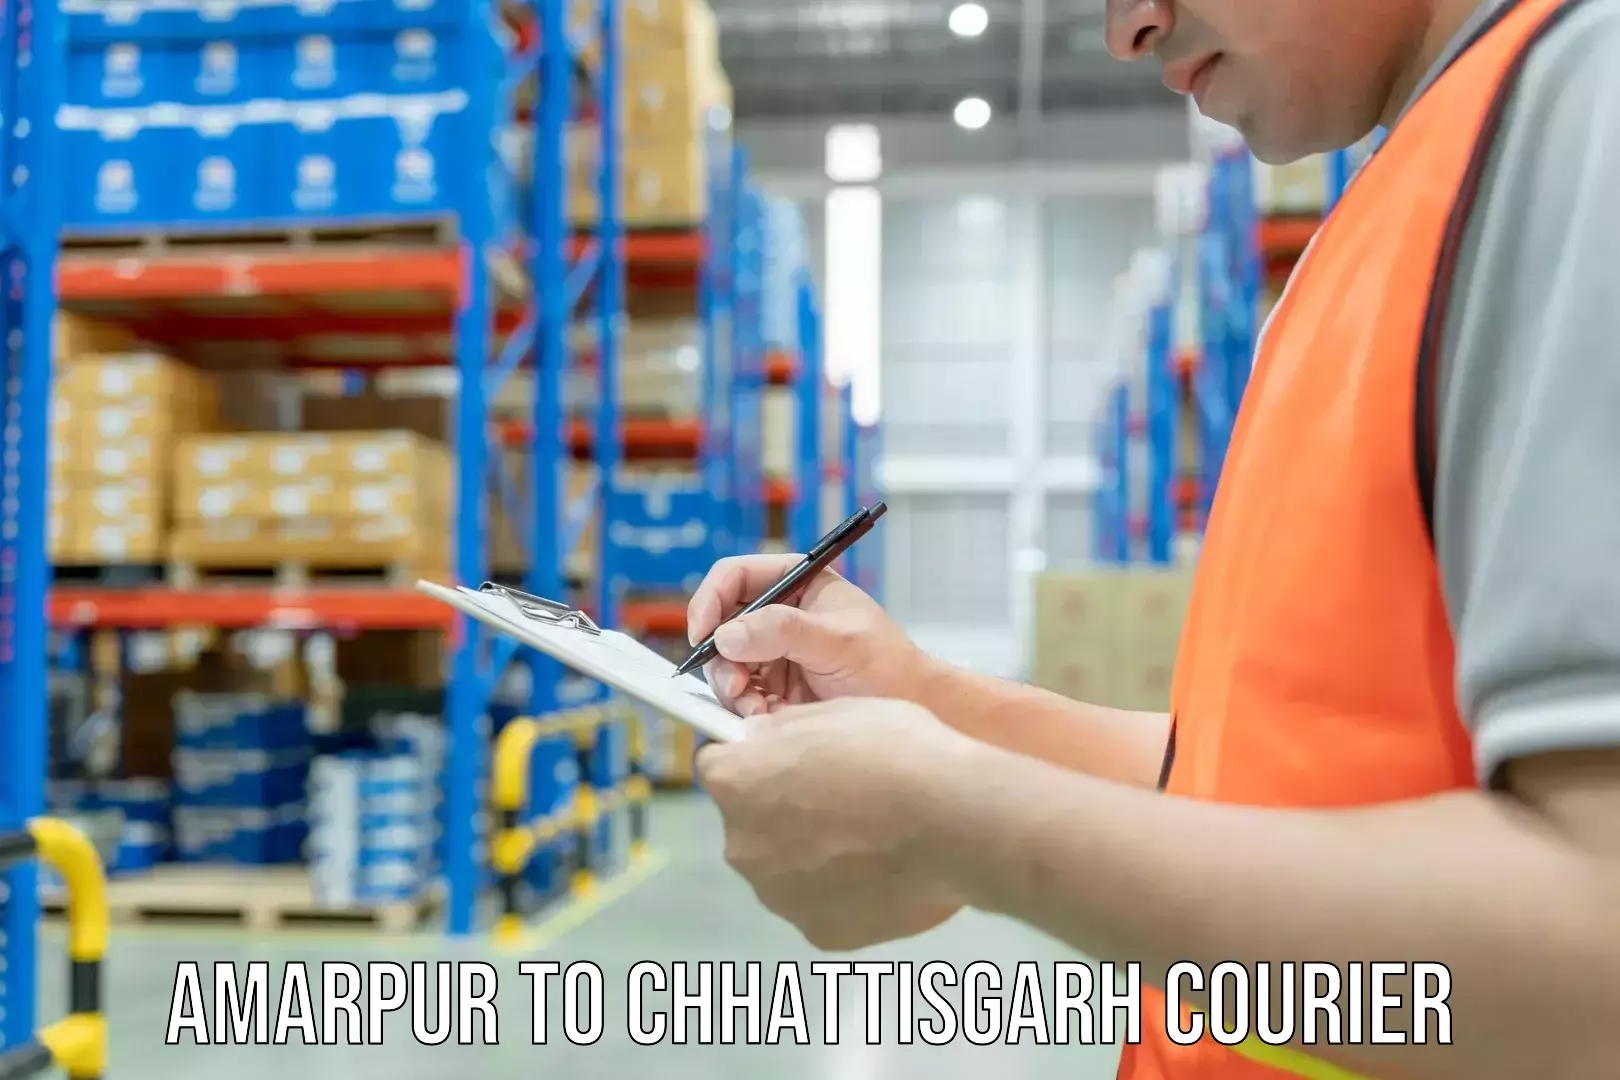 Courier service comparison Amarpur to Chhattisgarh